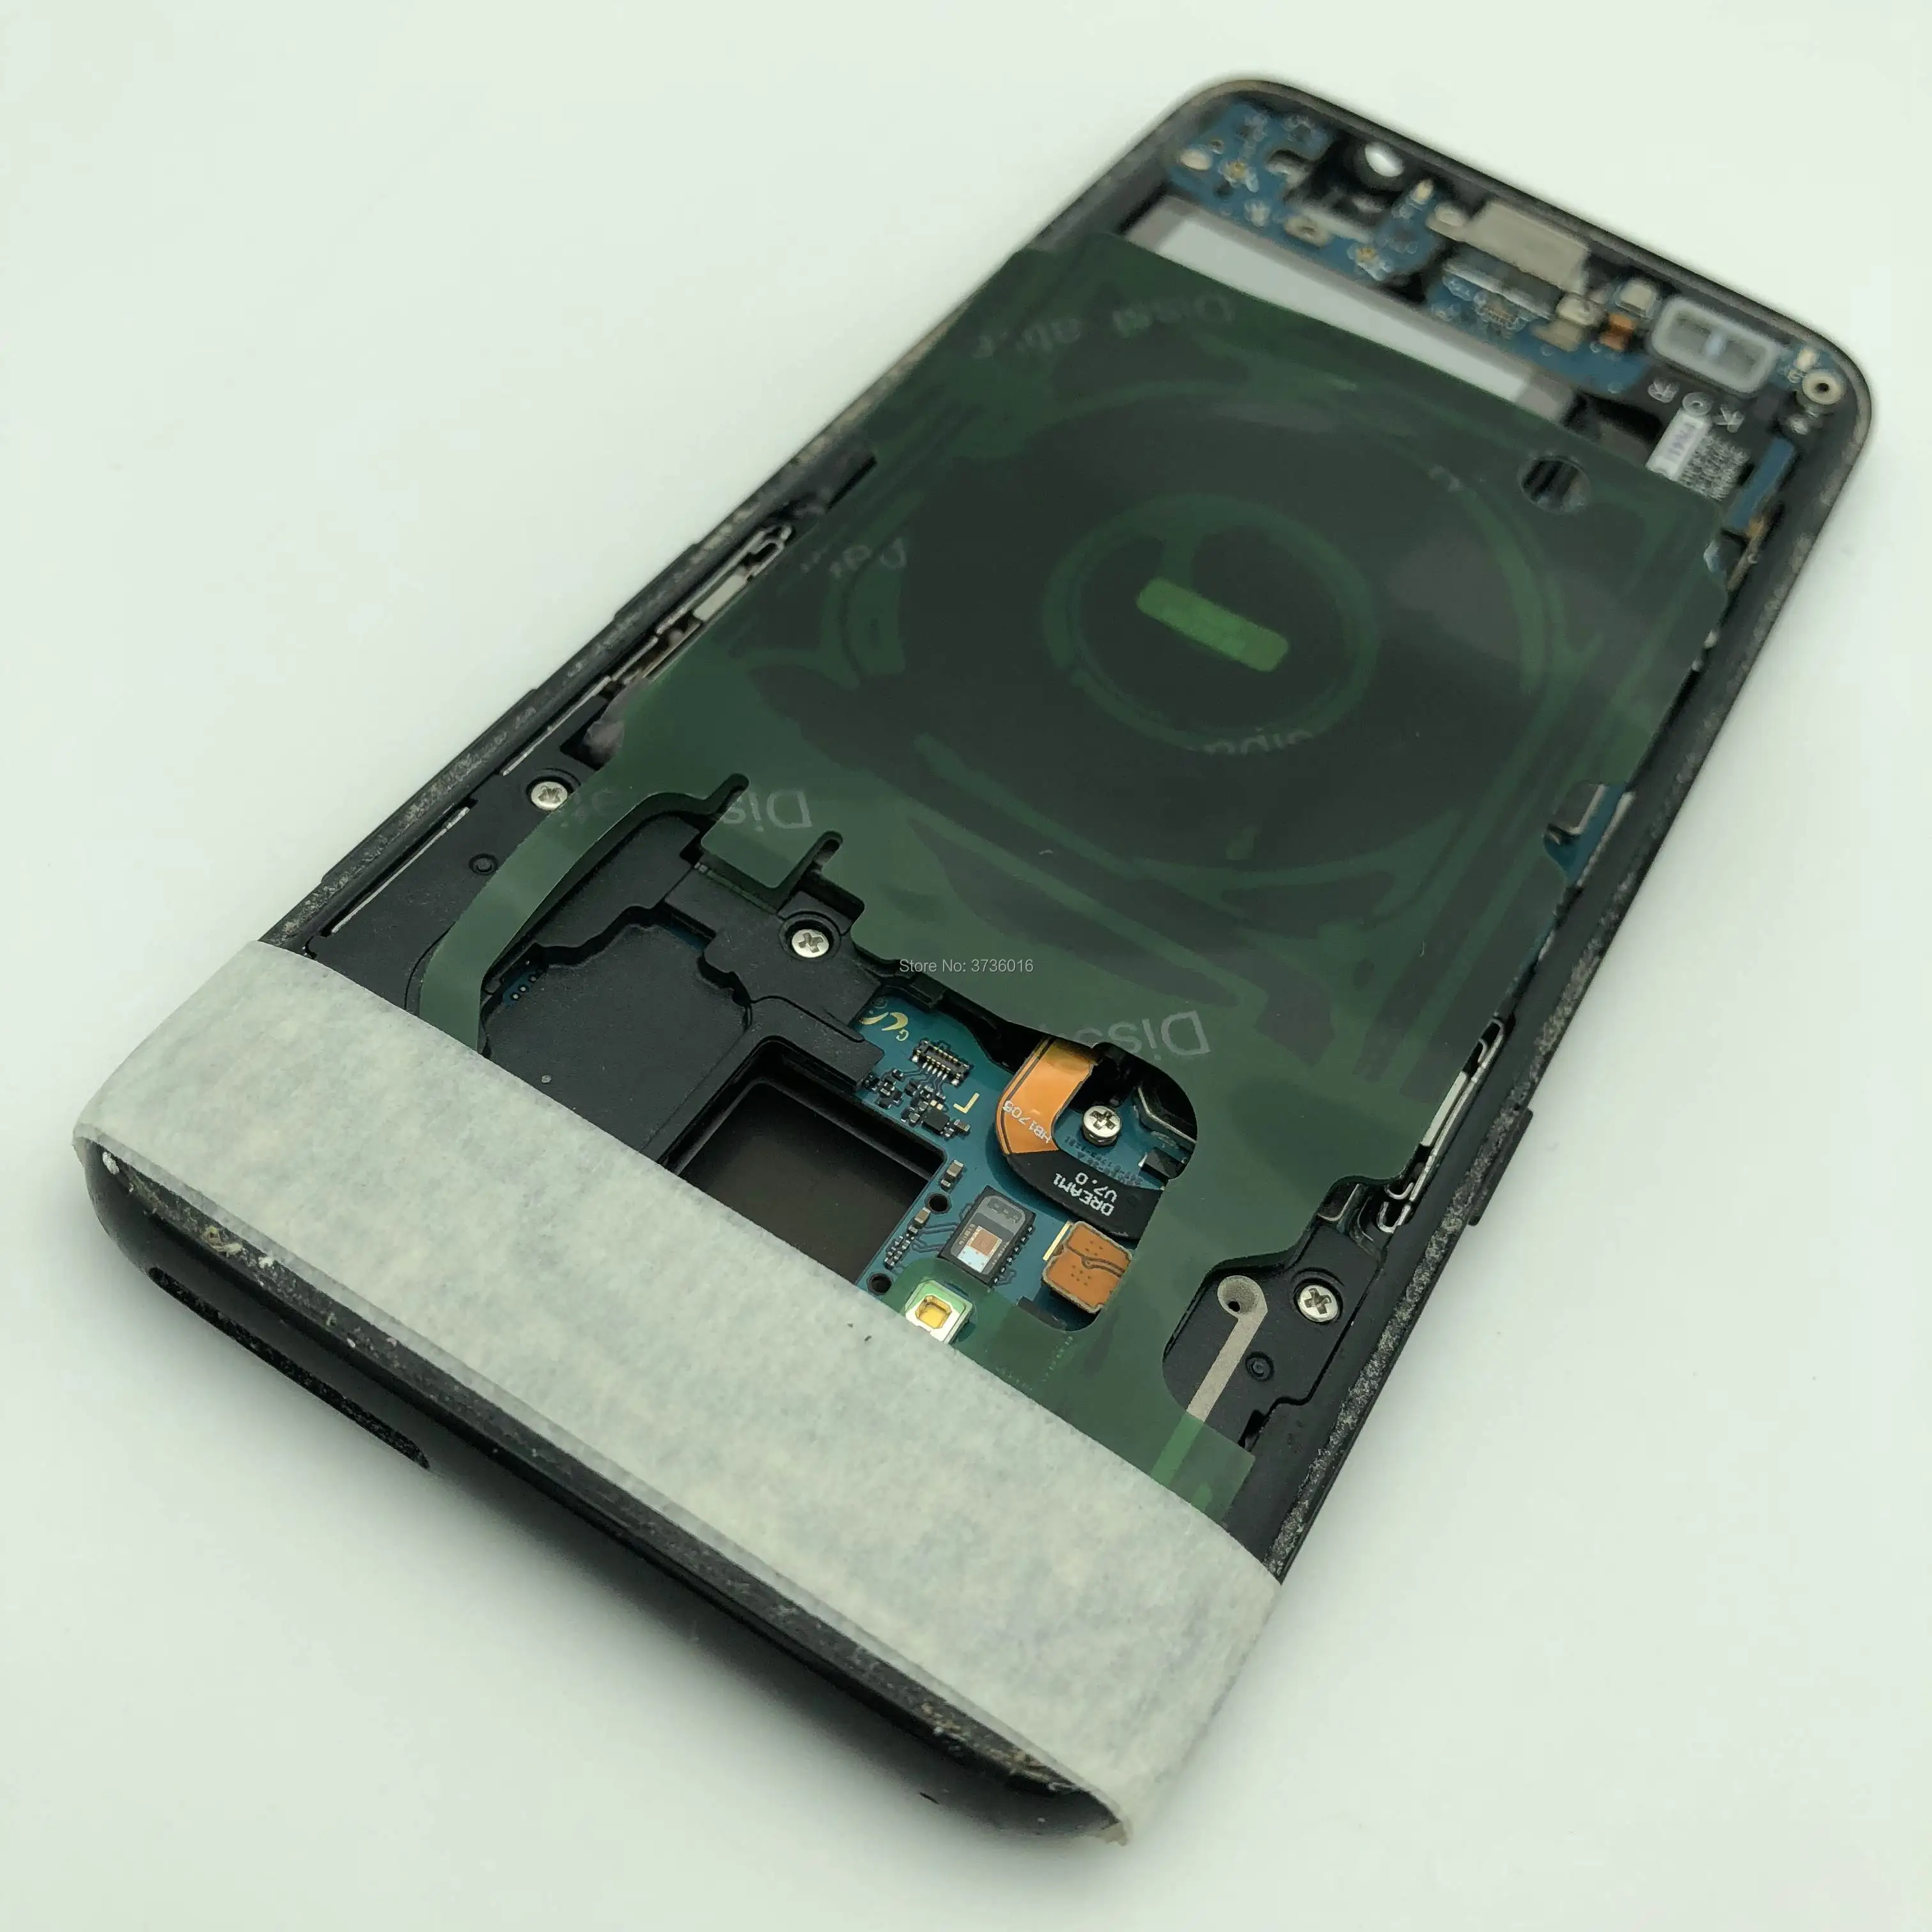 ЖК-экран тест ing материнская плата для Samsung S8 мобильный телефон жидкокристаллический дисплей с сенсорным экраном тест ремонт с рамка корпуса и батареи